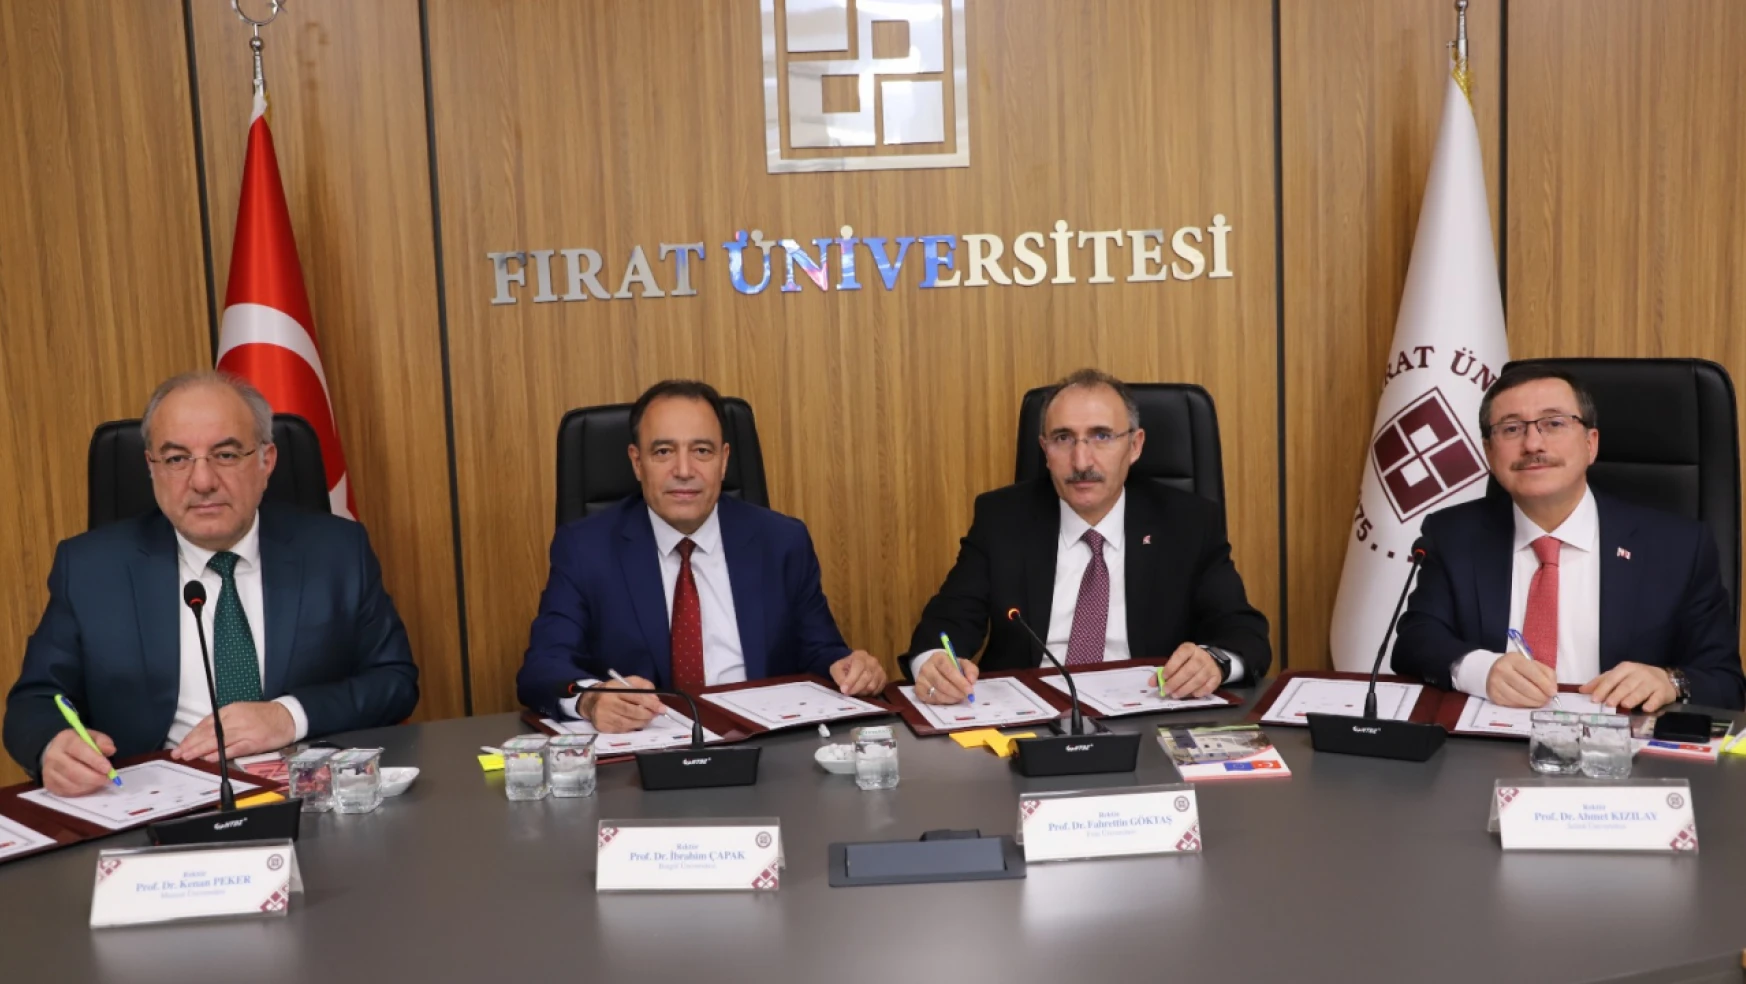 Bölge Üniversiteleri Fırat Üniversitesi Koordinatörlüğünde Bir Araya Geldi